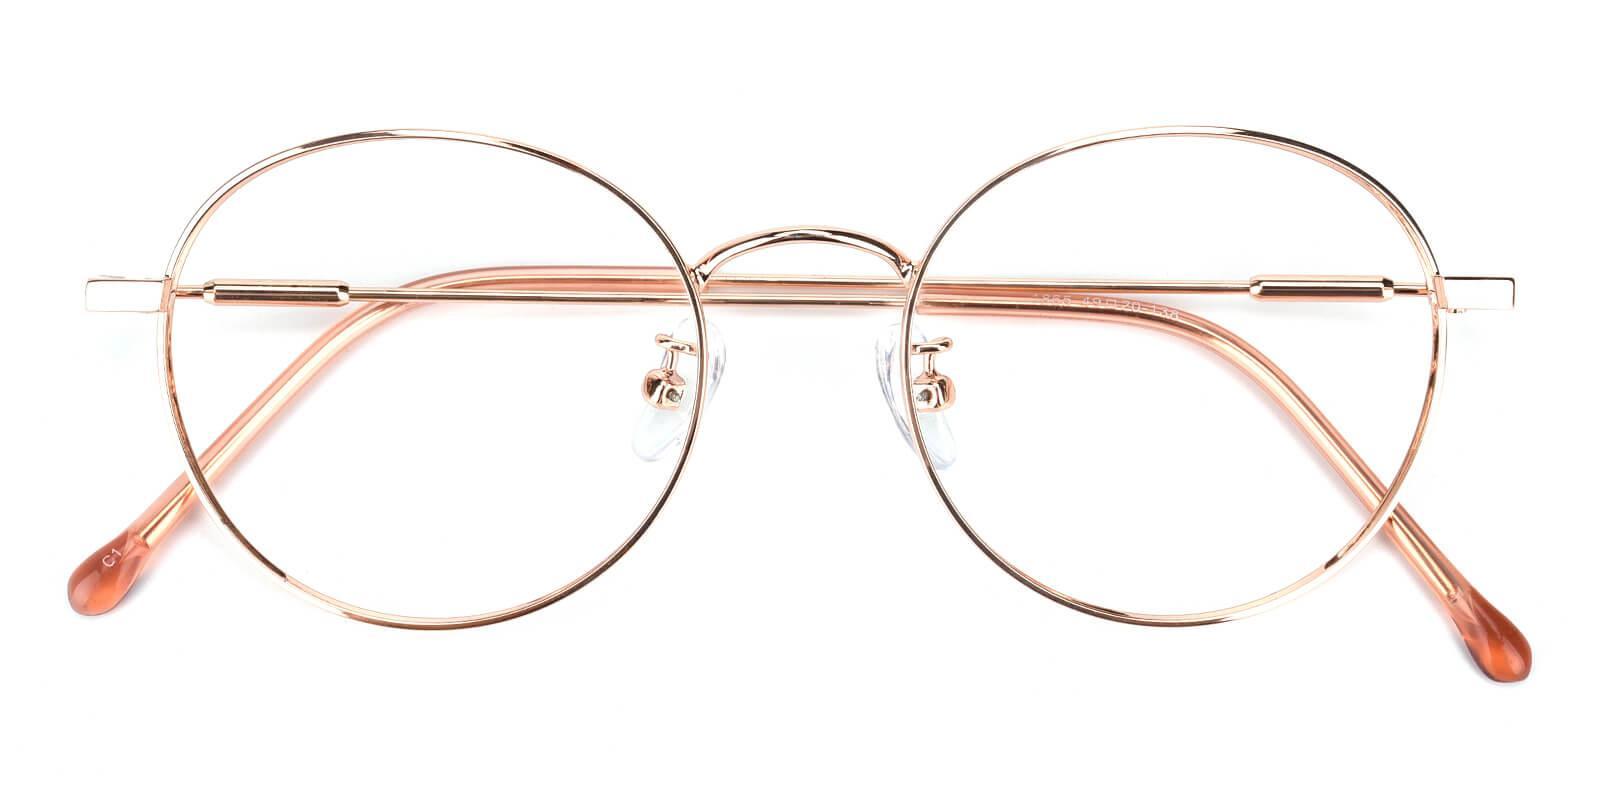 Hibbardr-Pink-Round-Metal-Eyeglasses-detail